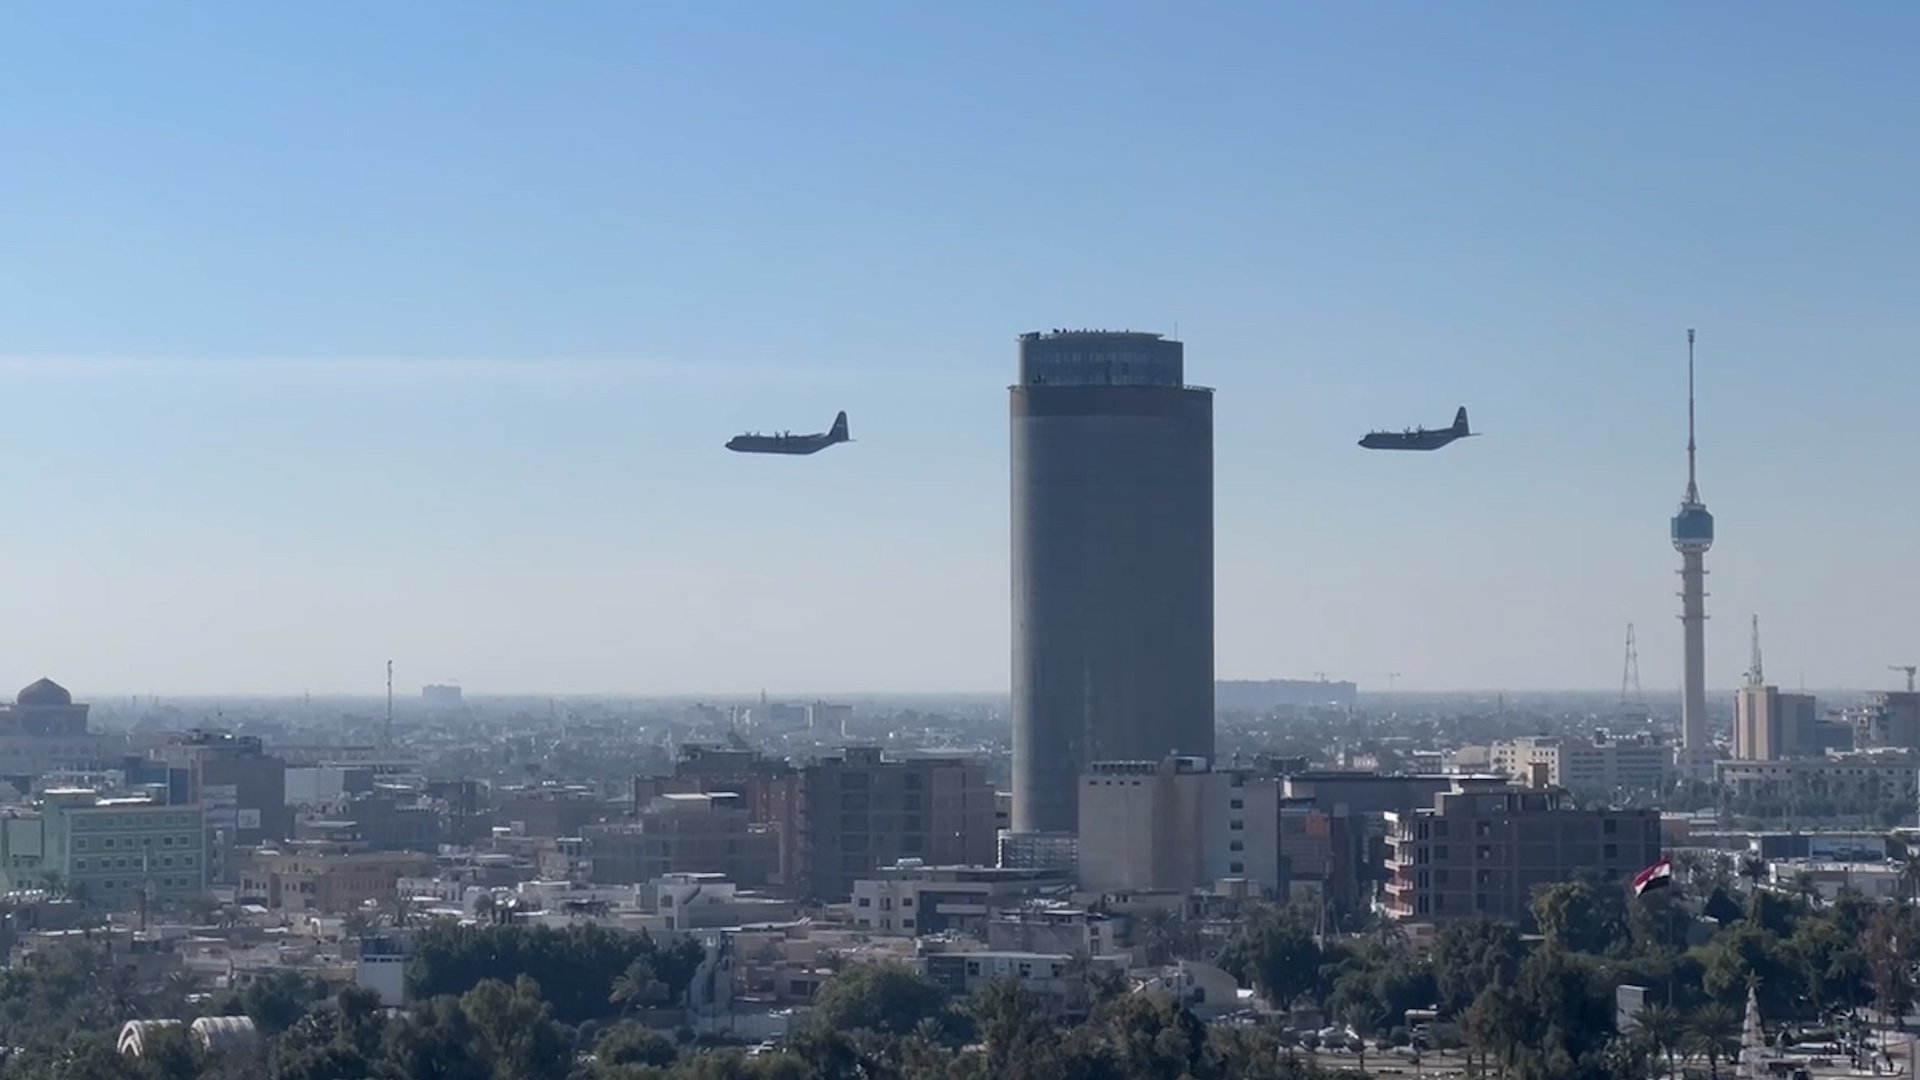 فيديو: طائرات الجيش تحلّق في سماء بغداد احتفالاً بعيده الـ103